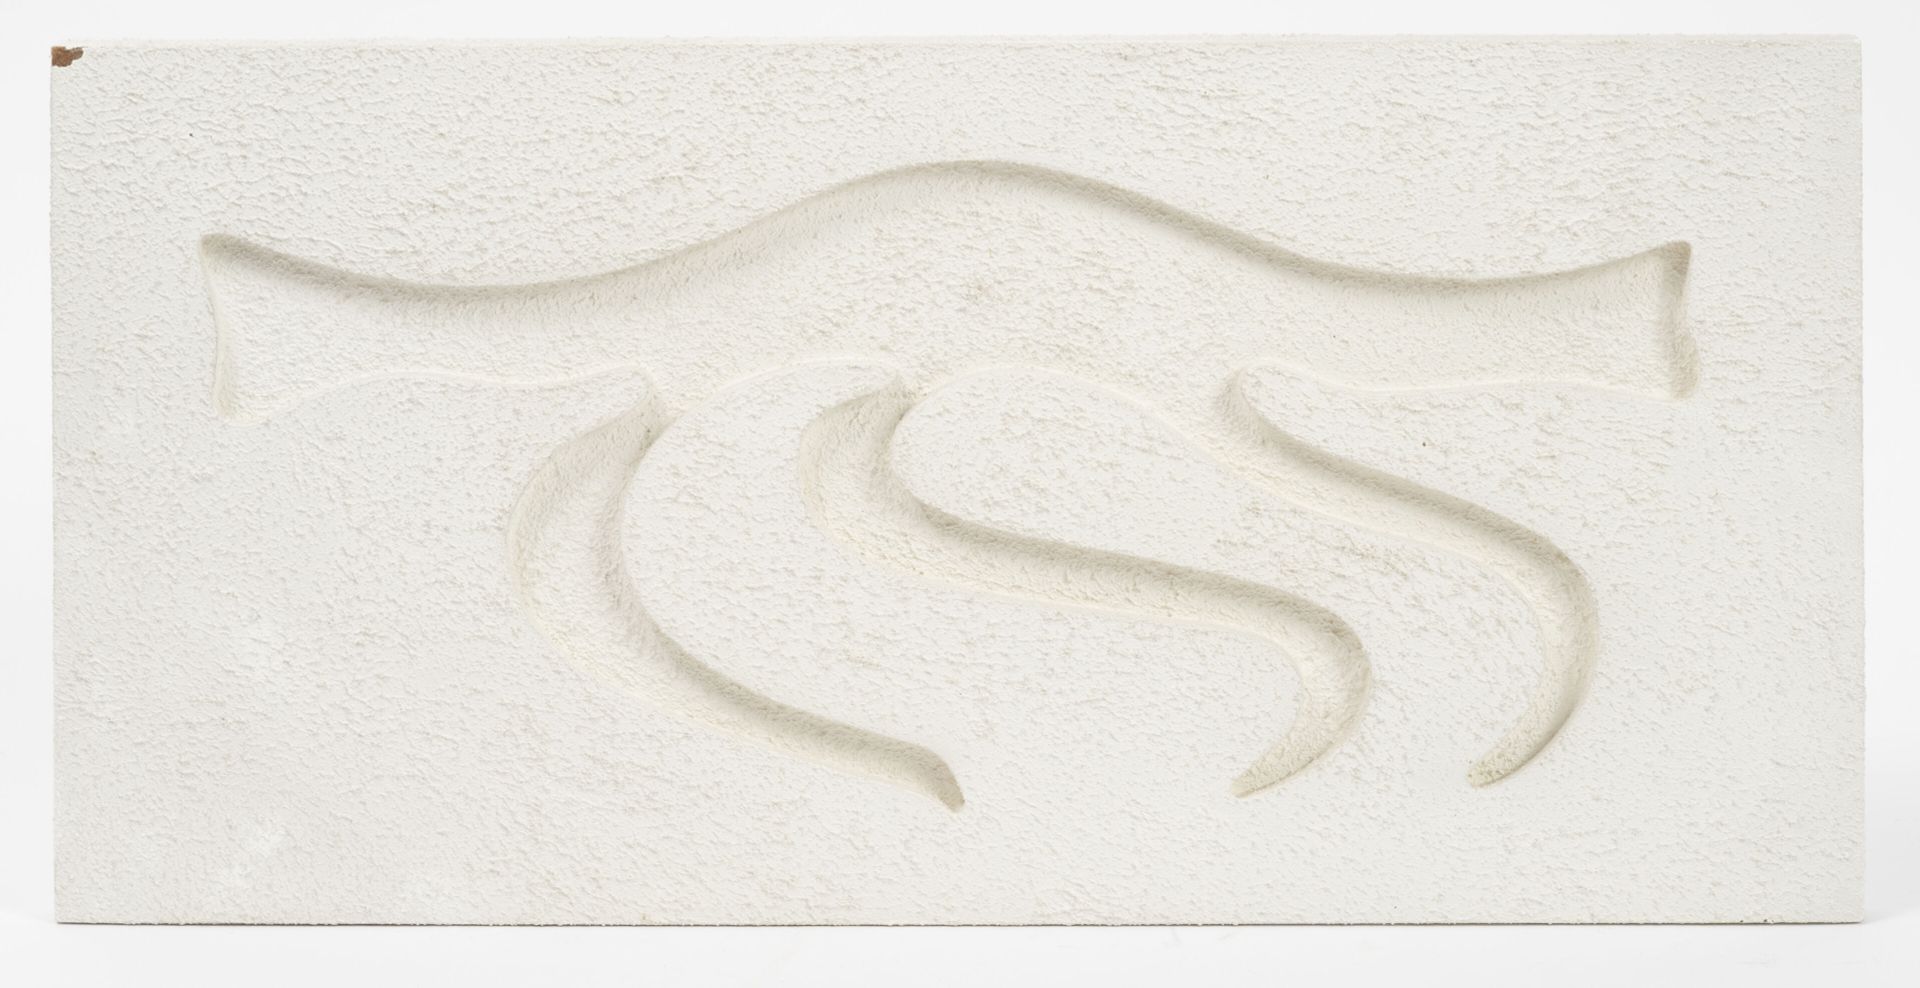 Jean LEGROS (1917-1981) 浮雕，约1970年。
木板，雕刻和涂白。
无符号。
21.5 x 44 厘米。
边缘处有小的损失。
染色剂。